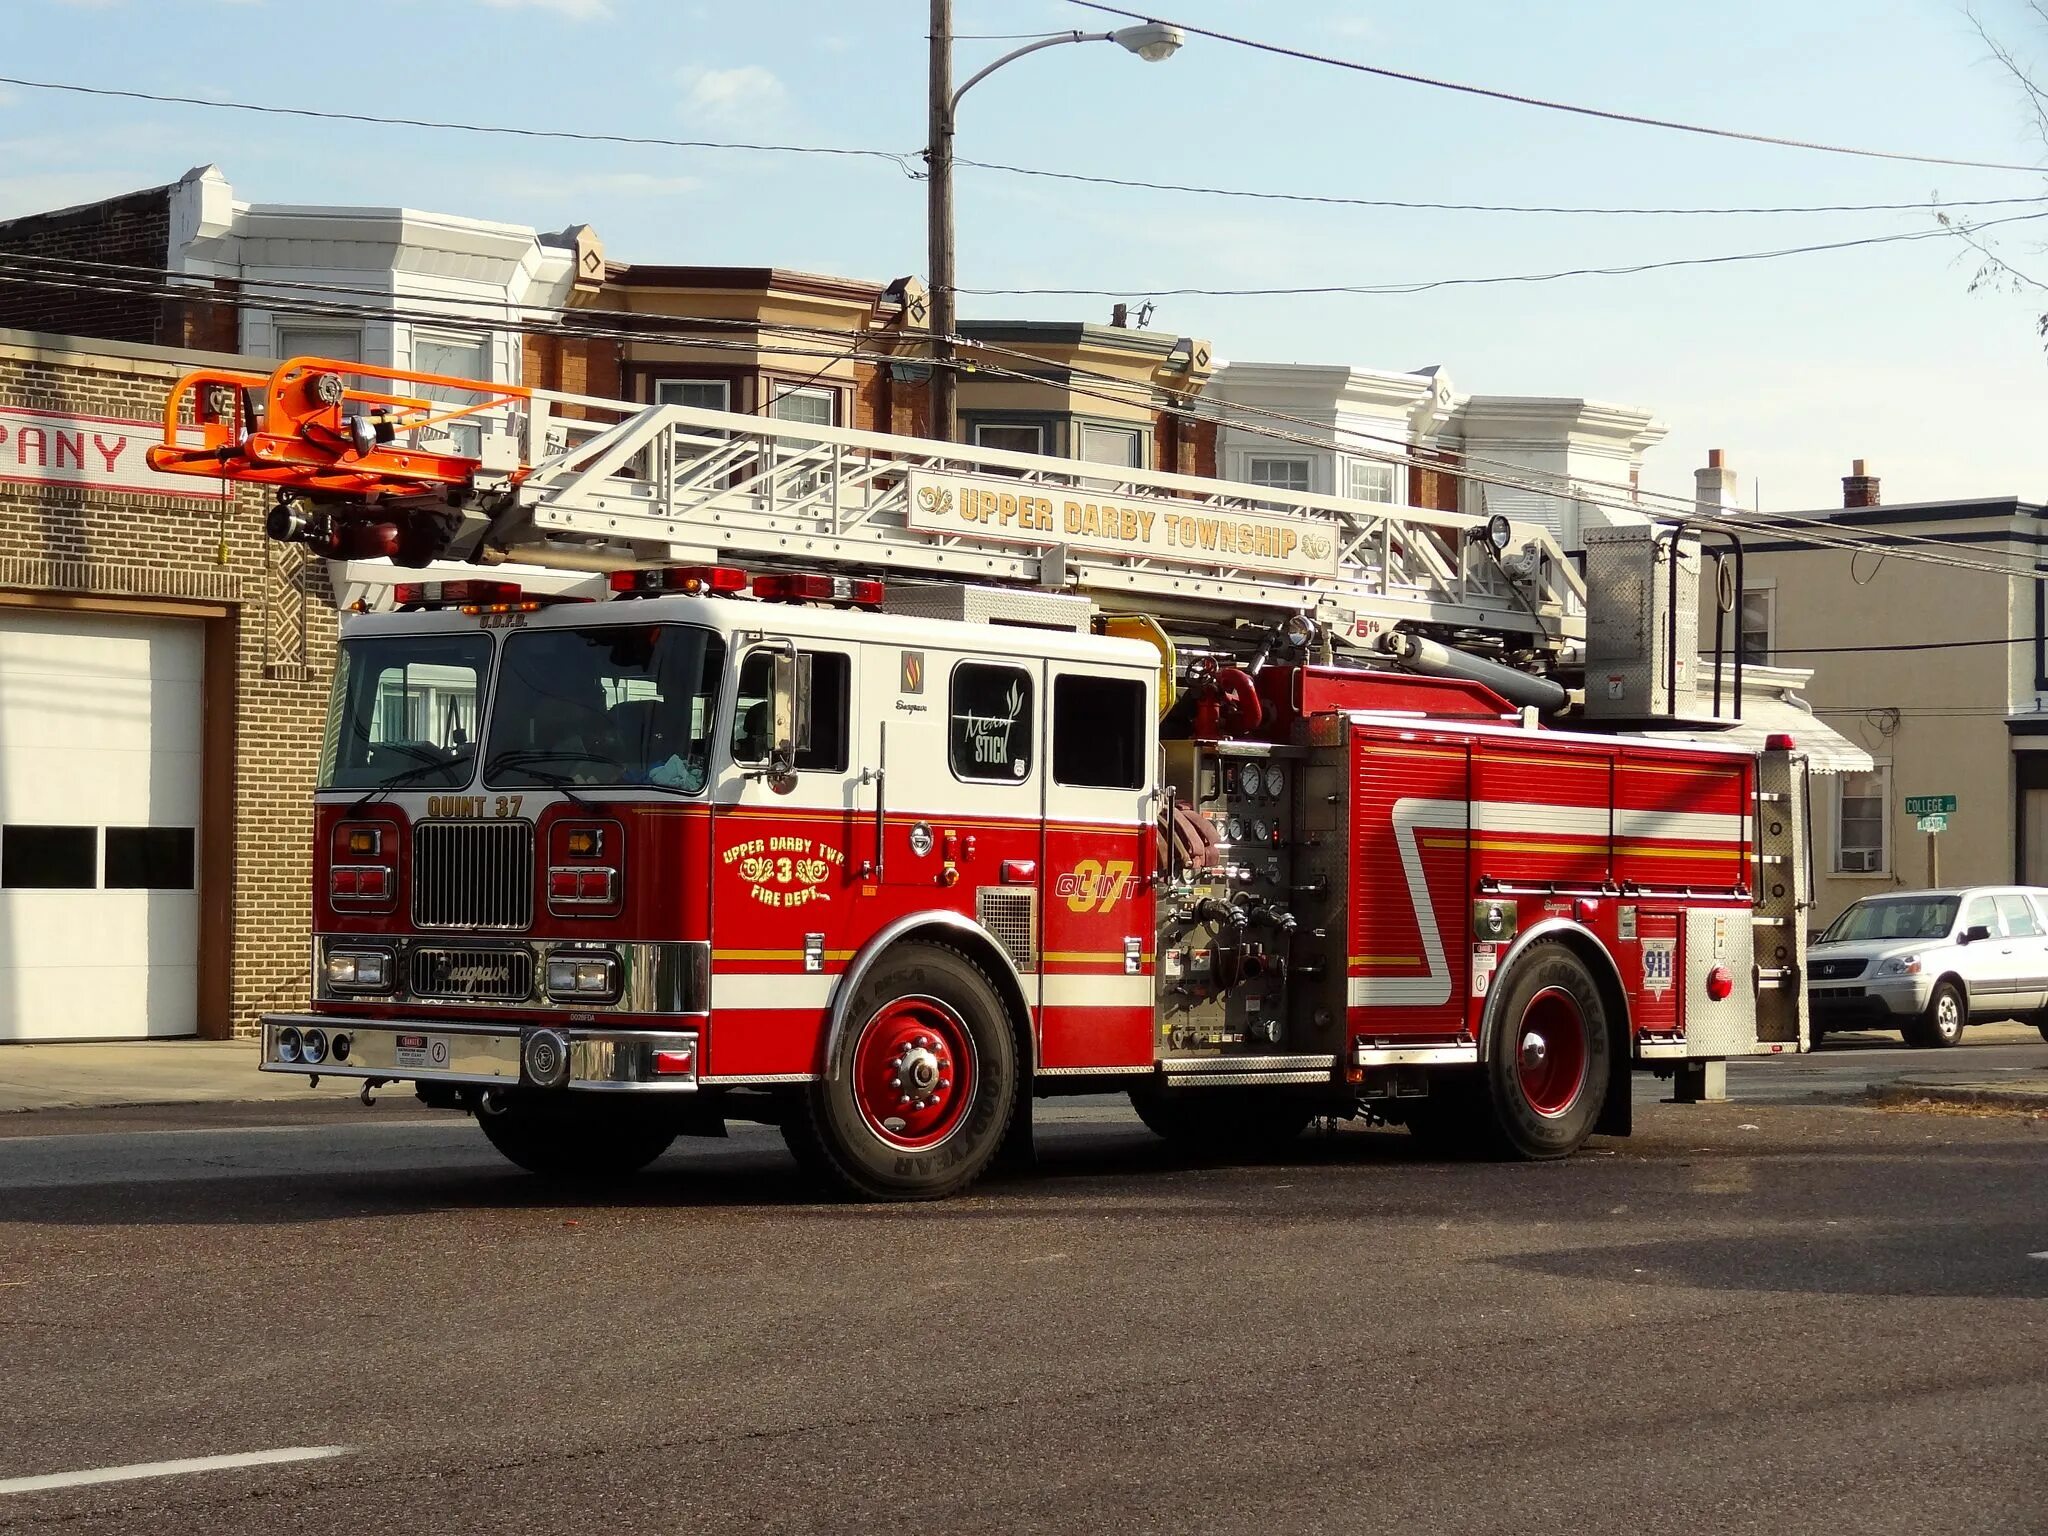 Пожарные машины Fire Dept 637. Грузовик Fire Department. Аса пожарный автомобиль. Fire House пожарная машина.